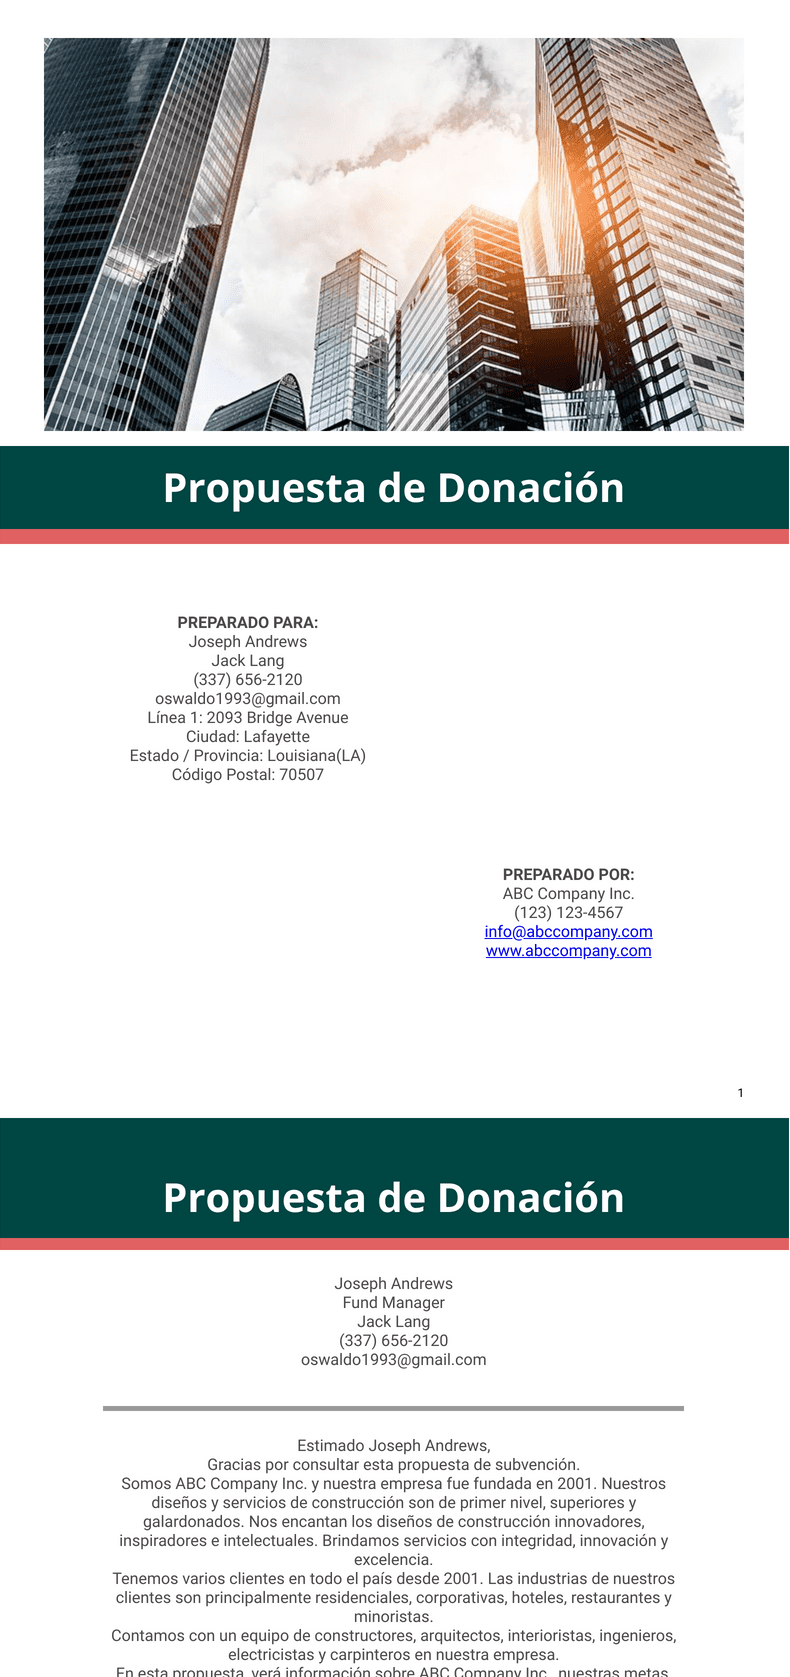 PDF Templates: Propuesta de Donación